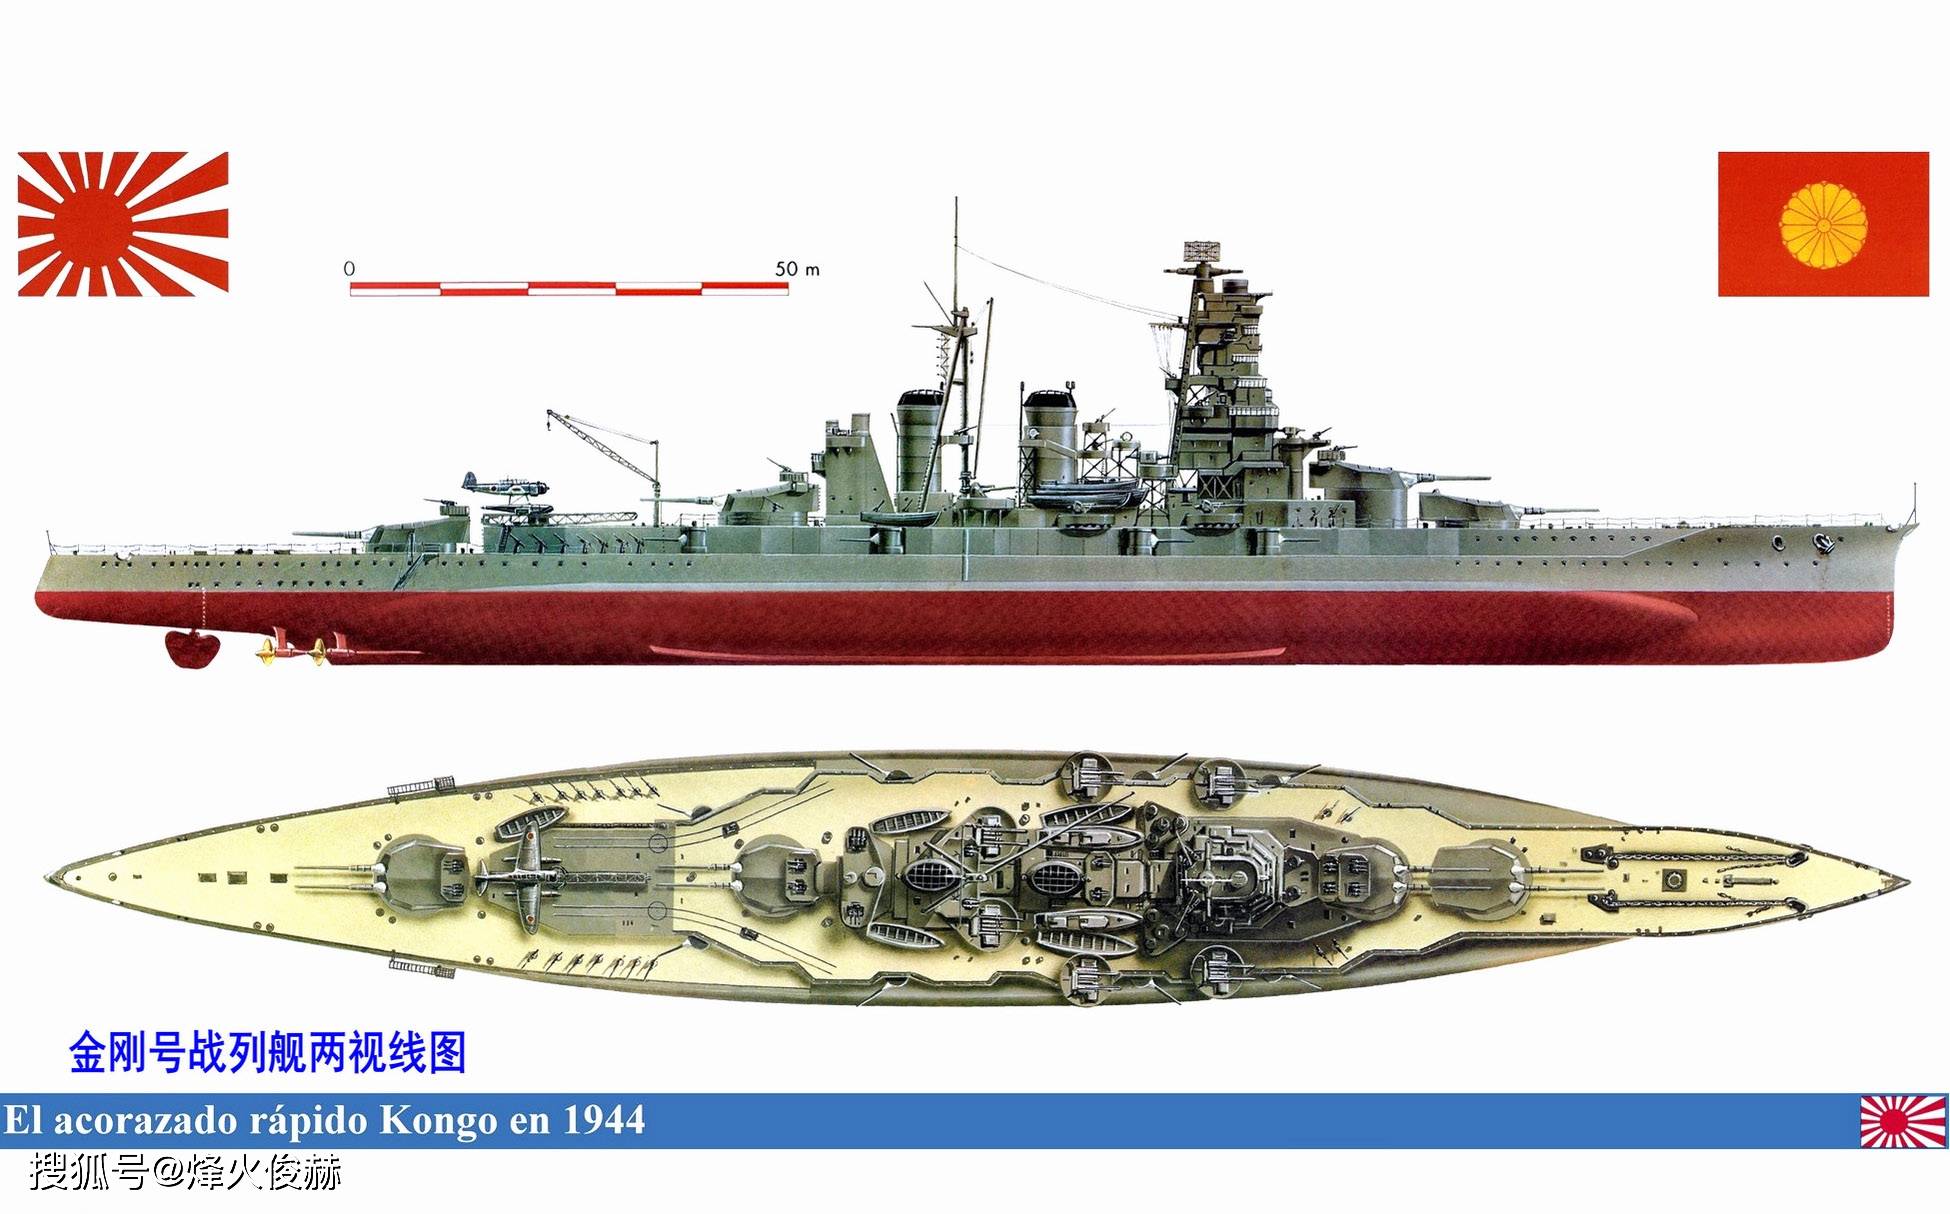 战列舰主炮为12英寸(约305毫米),俄里翁级(orion,也称猎户座级)开始的